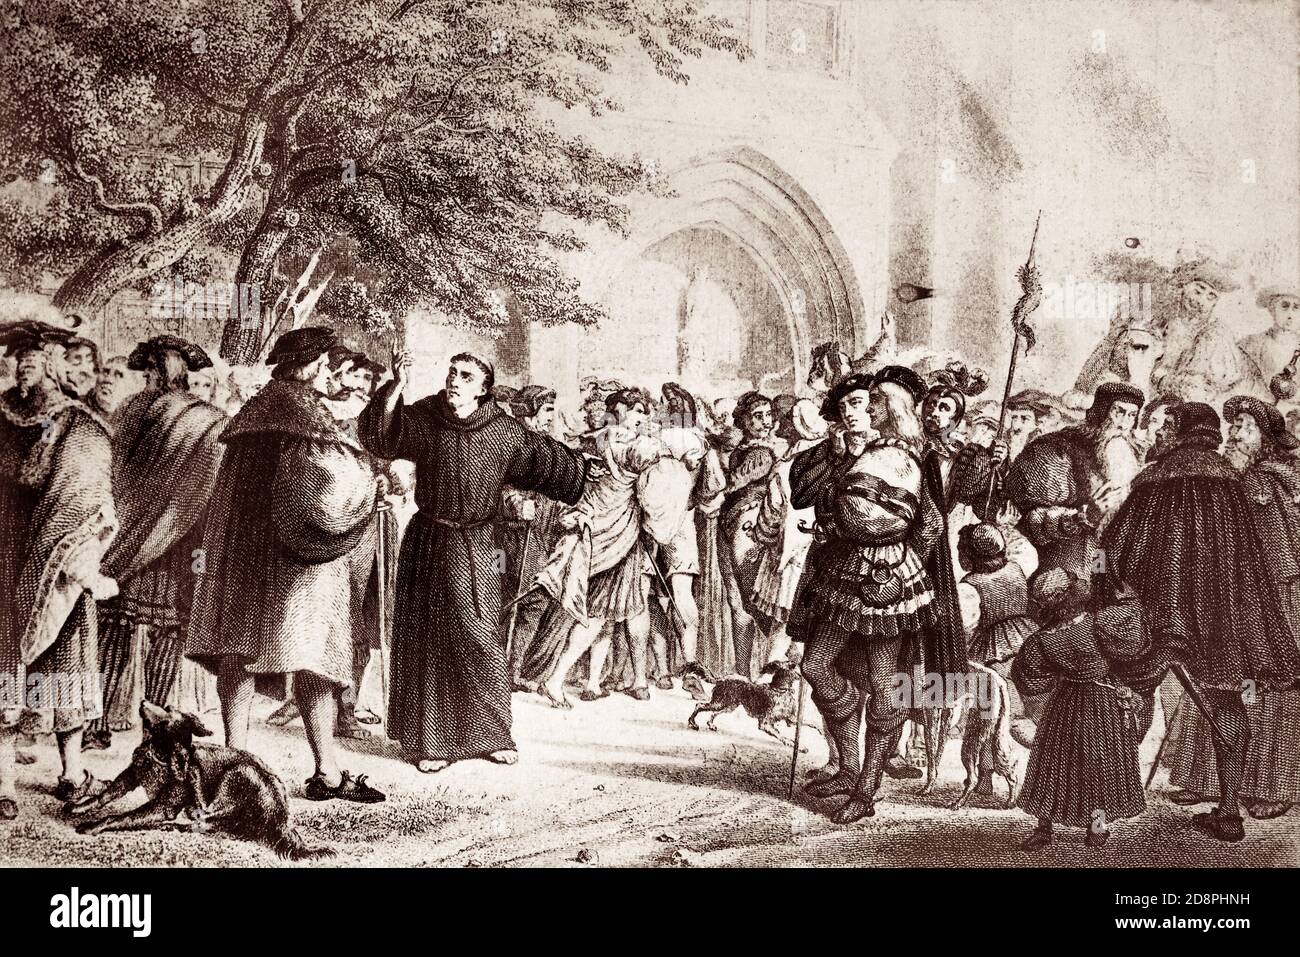 Stich von Martin Luther (1483-1546), einer Schlüsselfigur der protestantischen Reformation, nachdem er 1517 die fünfundneunzig Thesen, oder „Disputation on the Power and Efficienence of Indulgences“, an der Tür der Allerheiligen-Kirche in Wittenberg genagelt hatte. Stockfoto